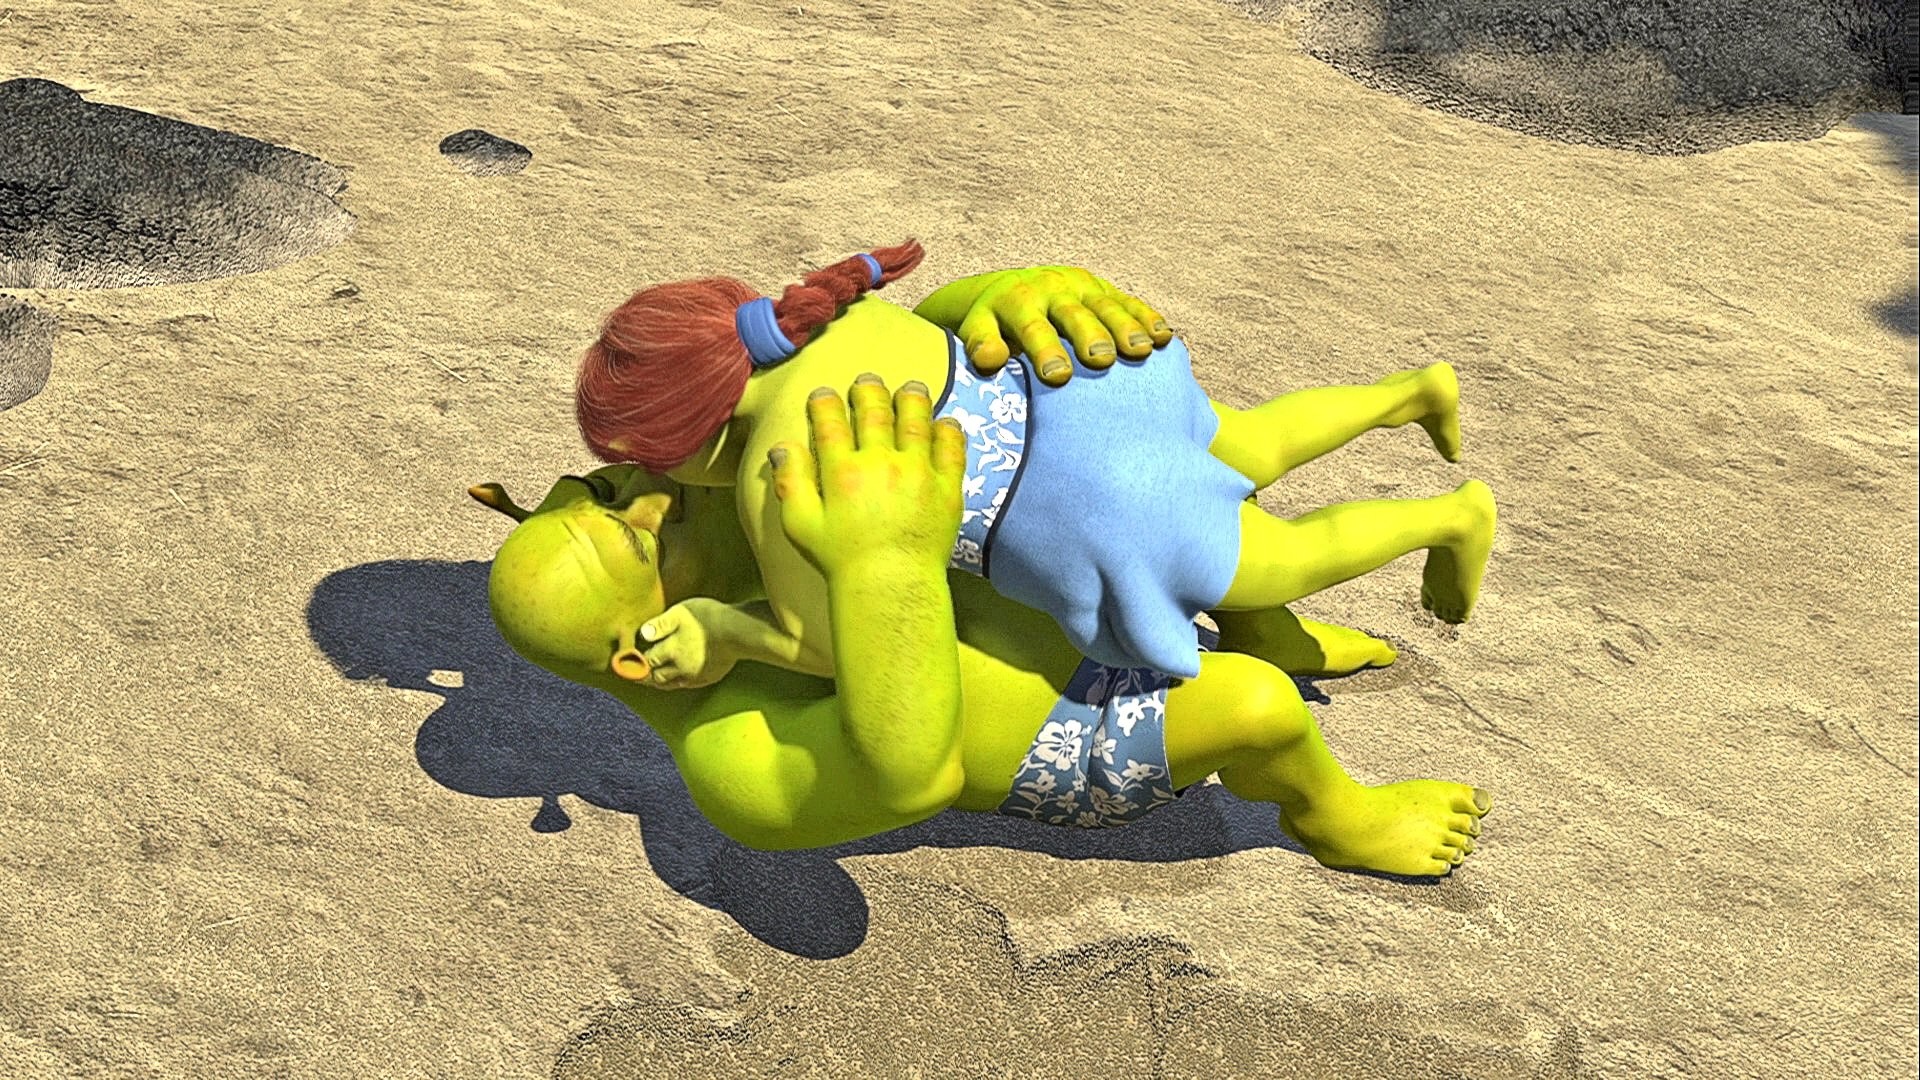 1920x1080 Image - Shrek & Fiona lying down kiss.jpg | WikiShrek | FANDOM powered by  Wikia